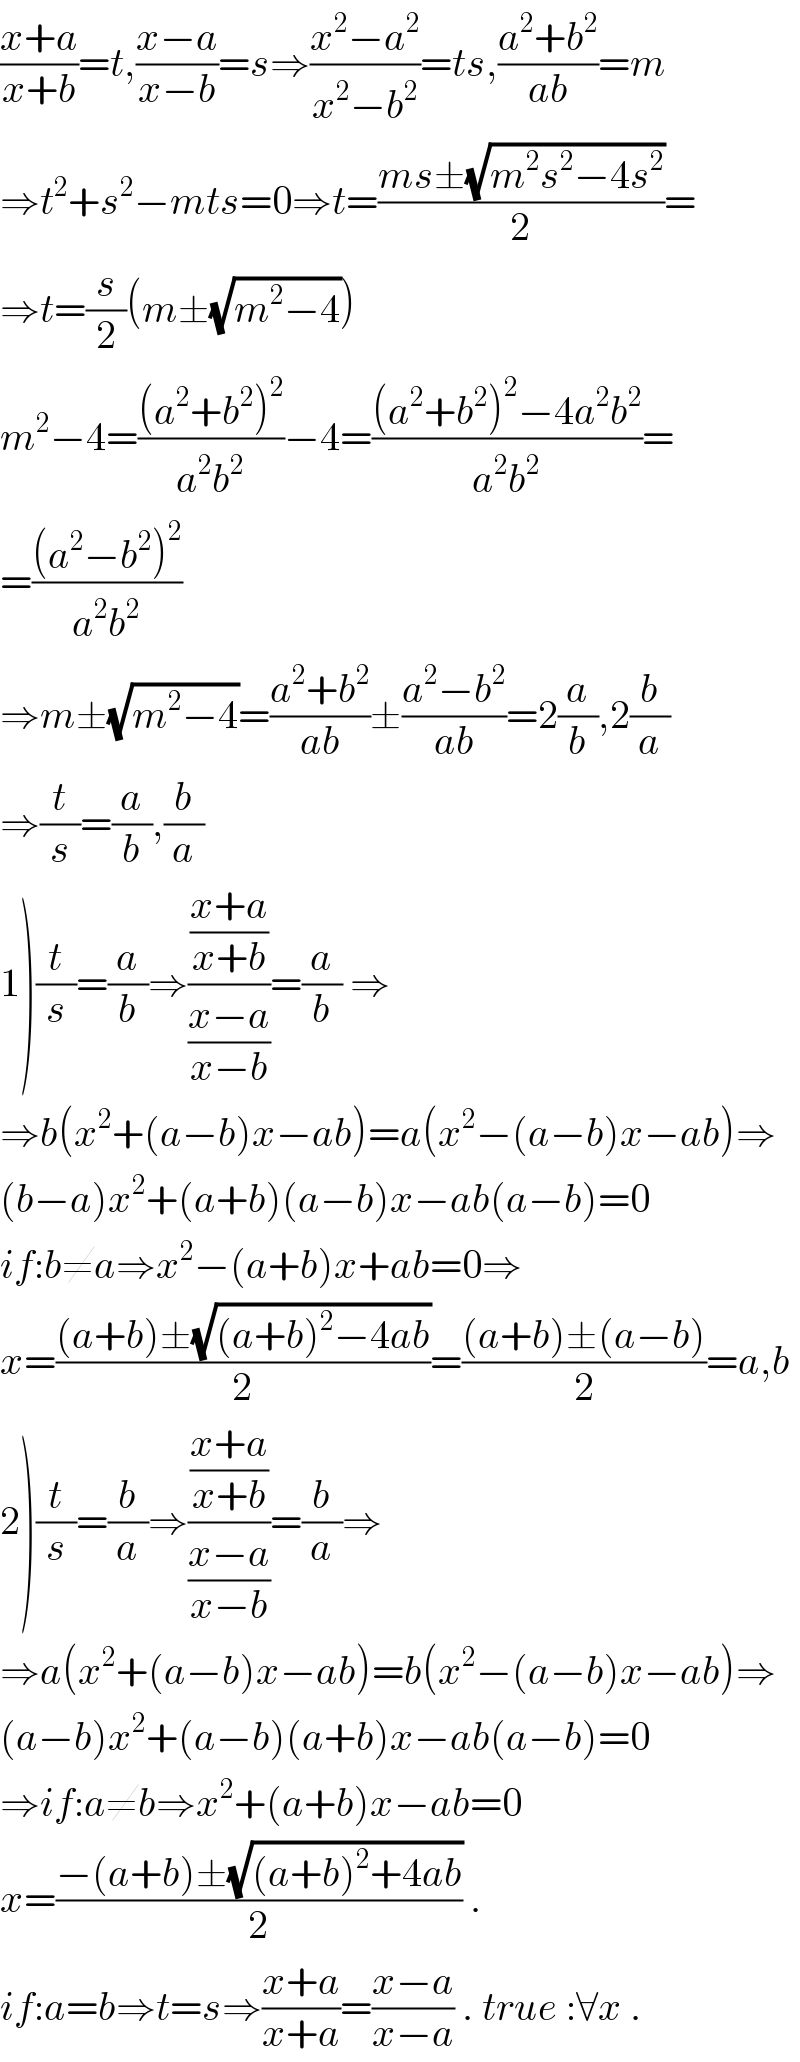 ((x+a)/(x+b))=t,((x−a)/(x−b))=s⇒((x^2 −a^2 )/(x^2 −b^2 ))=ts,((a^2 +b^2 )/(ab))=m  ⇒t^2 +s^2 −mts=0⇒t=((ms±(√(m^2 s^2 −4s^2 )))/2)=  ⇒t=(s/2)(m±(√(m^2 −4)))  m^2 −4=(((a^2 +b^2 )^2 )/(a^2 b^2 ))−4=(((a^2 +b^2 )^2 −4a^2 b^2 )/(a^2 b^2 ))=  =(((a^2 −b^2 )^2 )/(a^2 b^2 ))  ⇒m±(√(m^2 −4))=((a^2 +b^2 )/(ab))±((a^2 −b^2 )/(ab))=2(a/b),2(b/a)  ⇒(t/s)=(a/b),(b/a)  1)(t/s)=(a/b)⇒(((x+a)/(x+b))/((x−a)/(x−b)))=(a/b) ⇒  ⇒b(x^2 +(a−b)x−ab)=a(x^2 −(a−b)x−ab)⇒  (b−a)x^2 +(a+b)(a−b)x−ab(a−b)=0  if:b≠a⇒x^2 −(a+b)x+ab=0⇒  x=(((a+b)±(√((a+b)^2 −4ab)))/2)=(((a+b)±(a−b))/2)=a,b  2)(t/s)=(b/a)⇒(((x+a)/(x+b))/((x−a)/(x−b)))=(b/a)⇒  ⇒a(x^2 +(a−b)x−ab)=b(x^2 −(a−b)x−ab)⇒  (a−b)x^2 +(a−b)(a+b)x−ab(a−b)=0  ⇒if:a≠b⇒x^2 +(a+b)x−ab=0  x=((−(a+b)±(√((a+b)^2 +4ab)))/2) .  if:a=b⇒t=s⇒((x+a)/(x+a))=((x−a)/(x−a)) . true :∀x .  